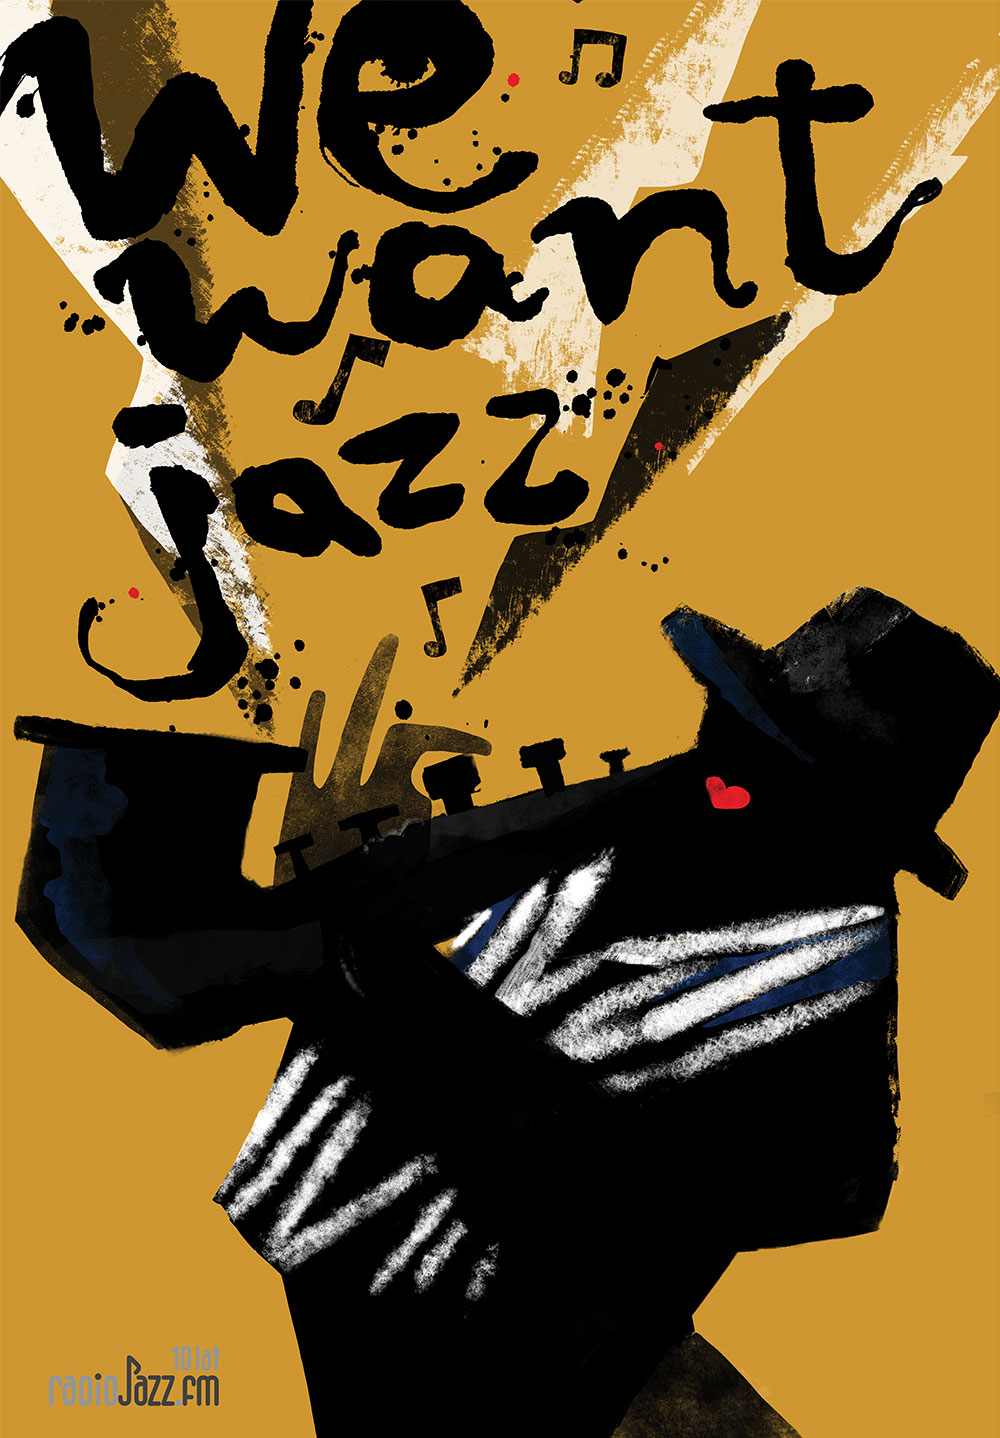 Marzec Kaja Polska We want jazz